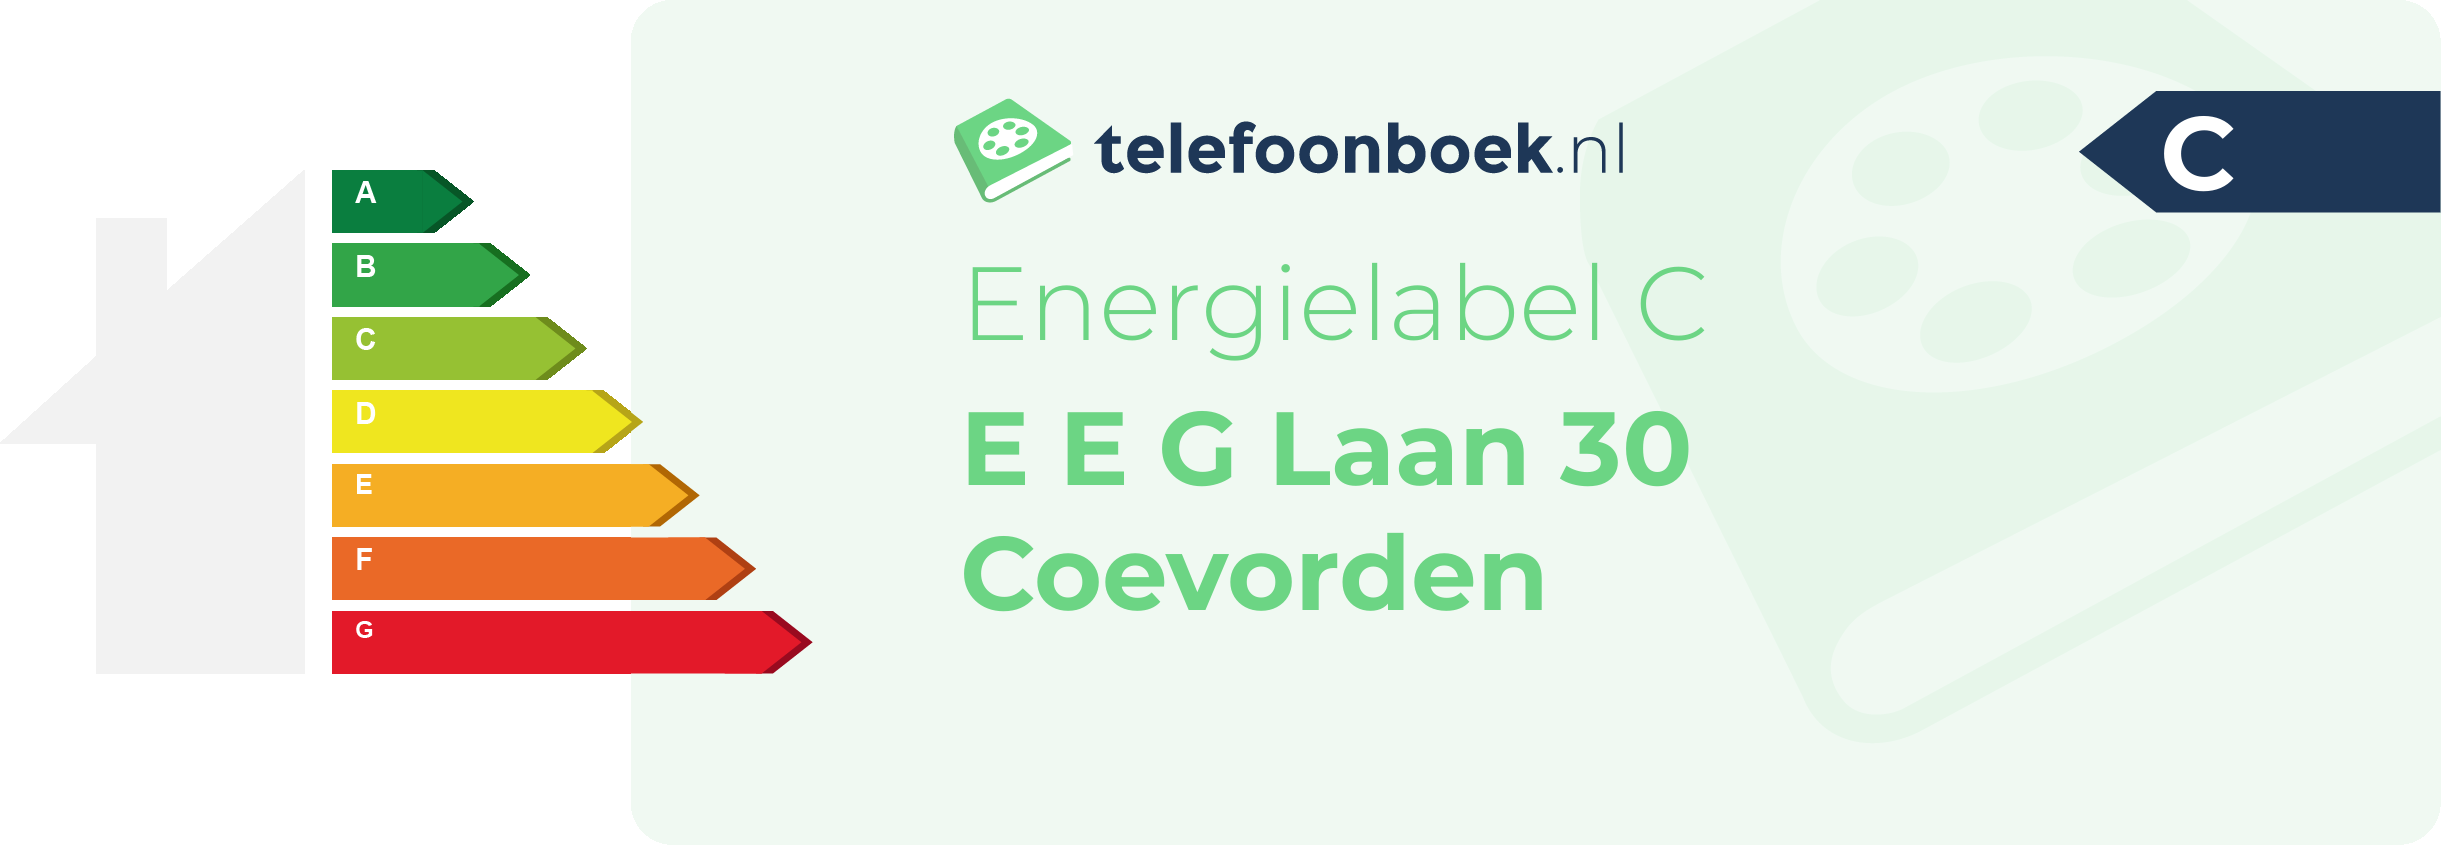 Energielabel E E G Laan 30 Coevorden